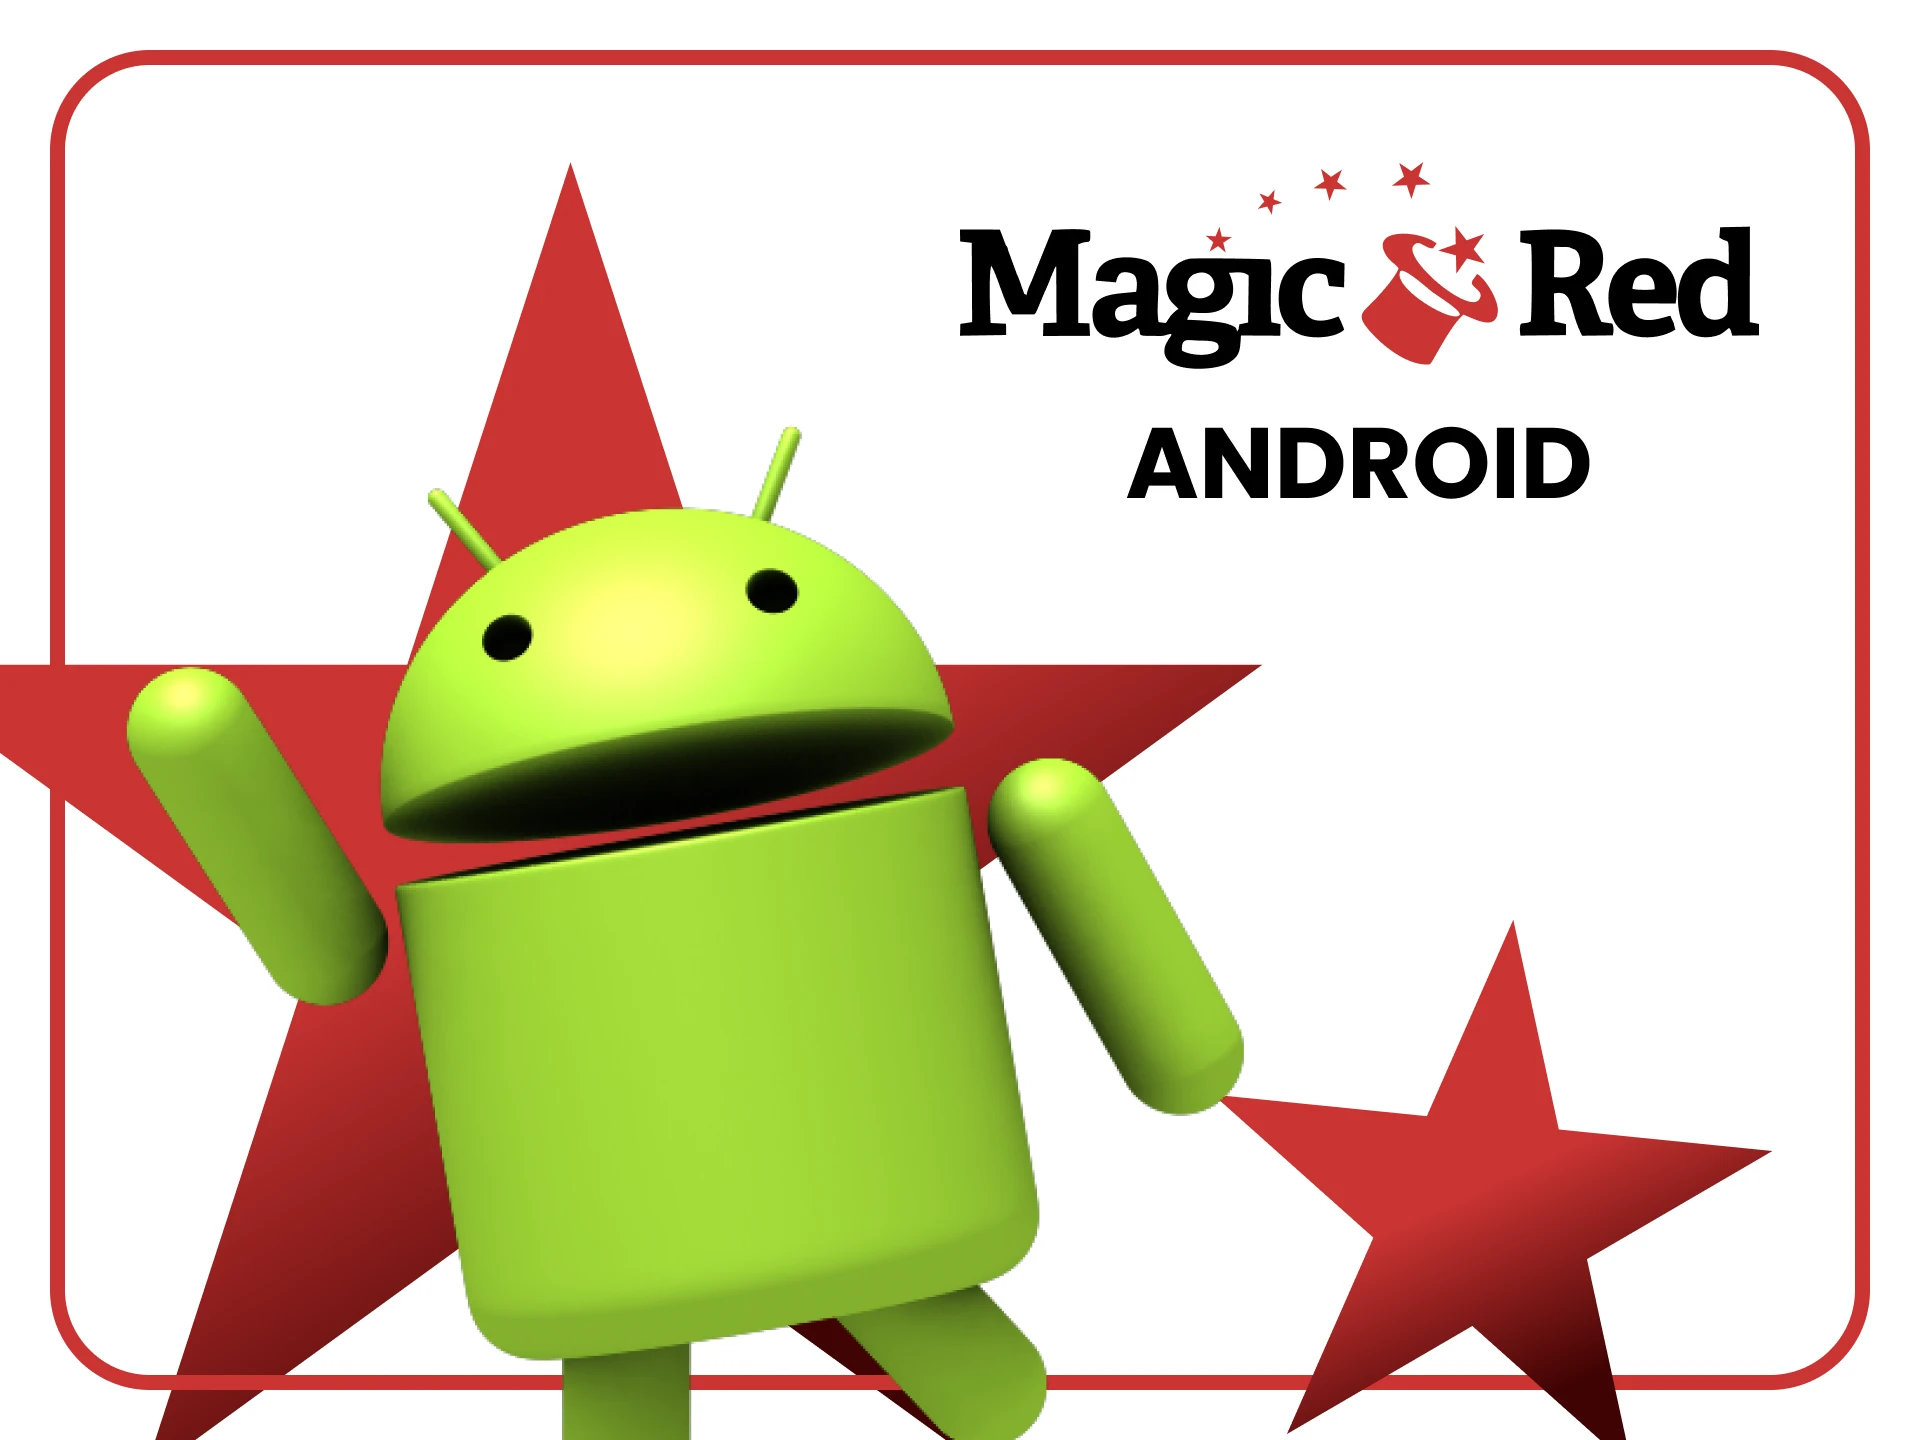 Use a versão móvel do Magic Red em qualquer dispositivo Android.